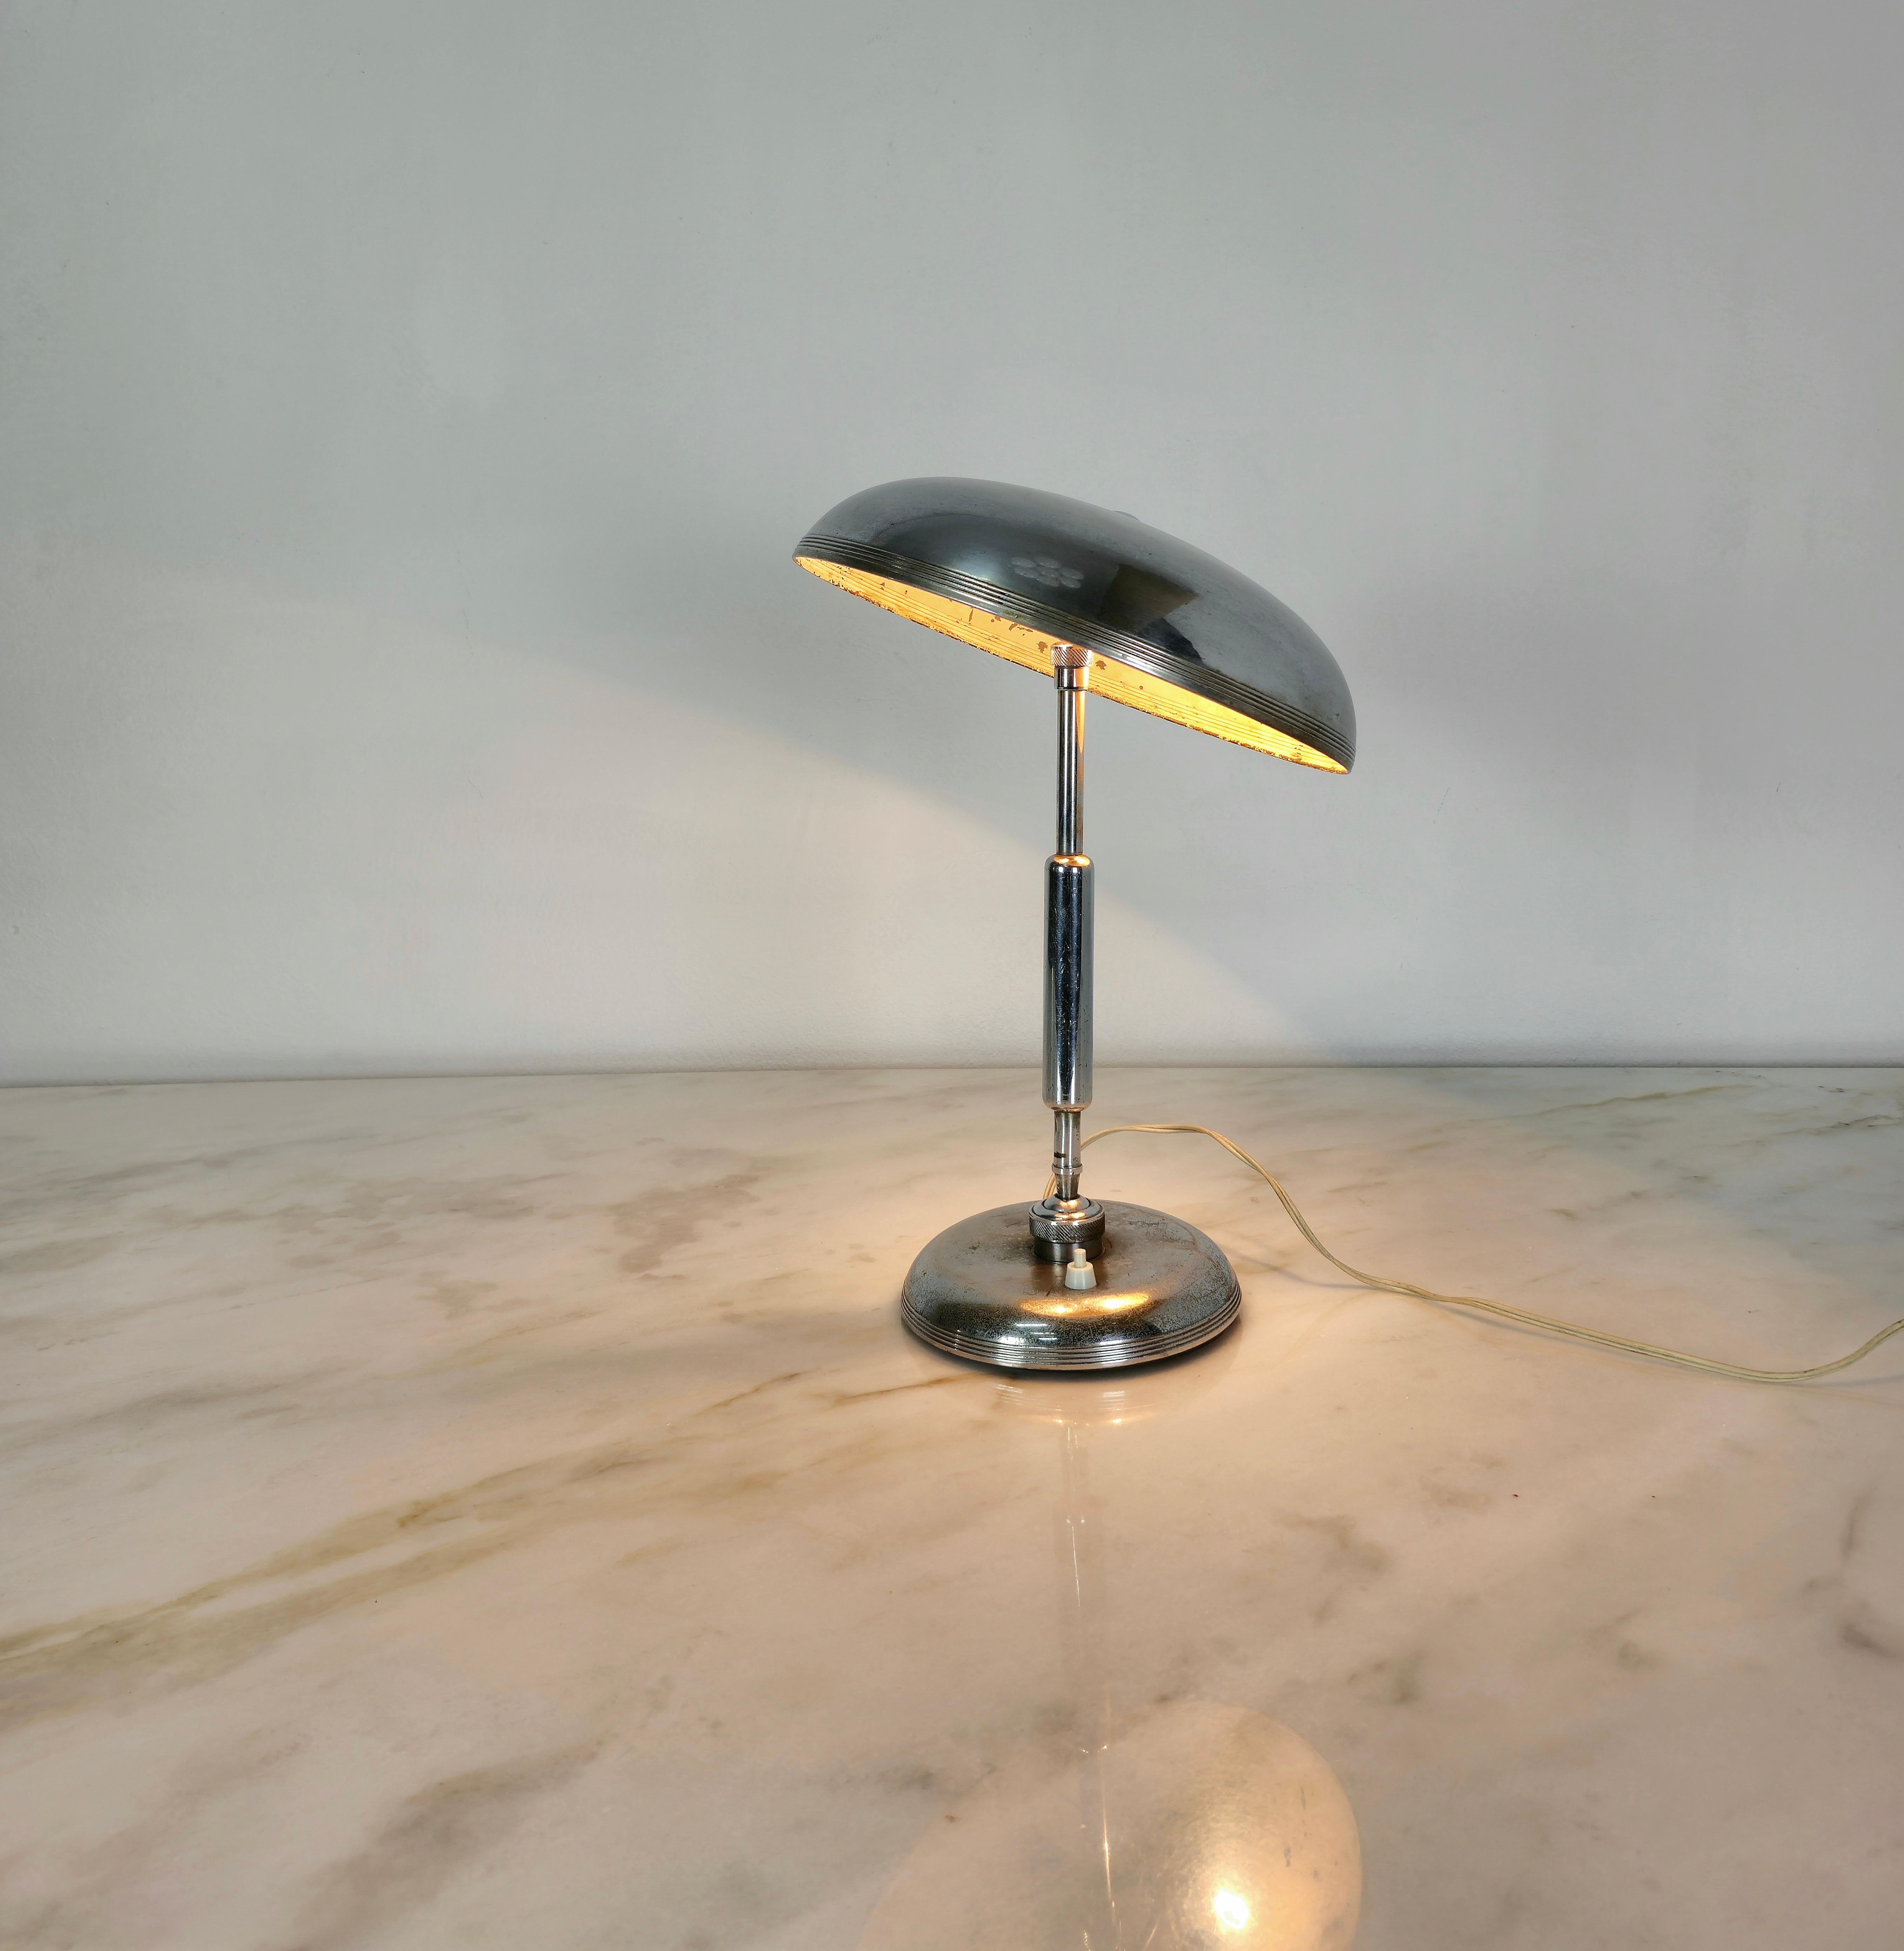 Seltene Tischleuchte, entworfen von dem Architekten Giovanni Michelucci und in den 1950er Jahren in Italien von Lariolux hergestellt.
Die Lampe hat eine geniale Funktionalität dank der zwei Gelenke, eines am Fuß des Stiels und eines am Diffusor, die